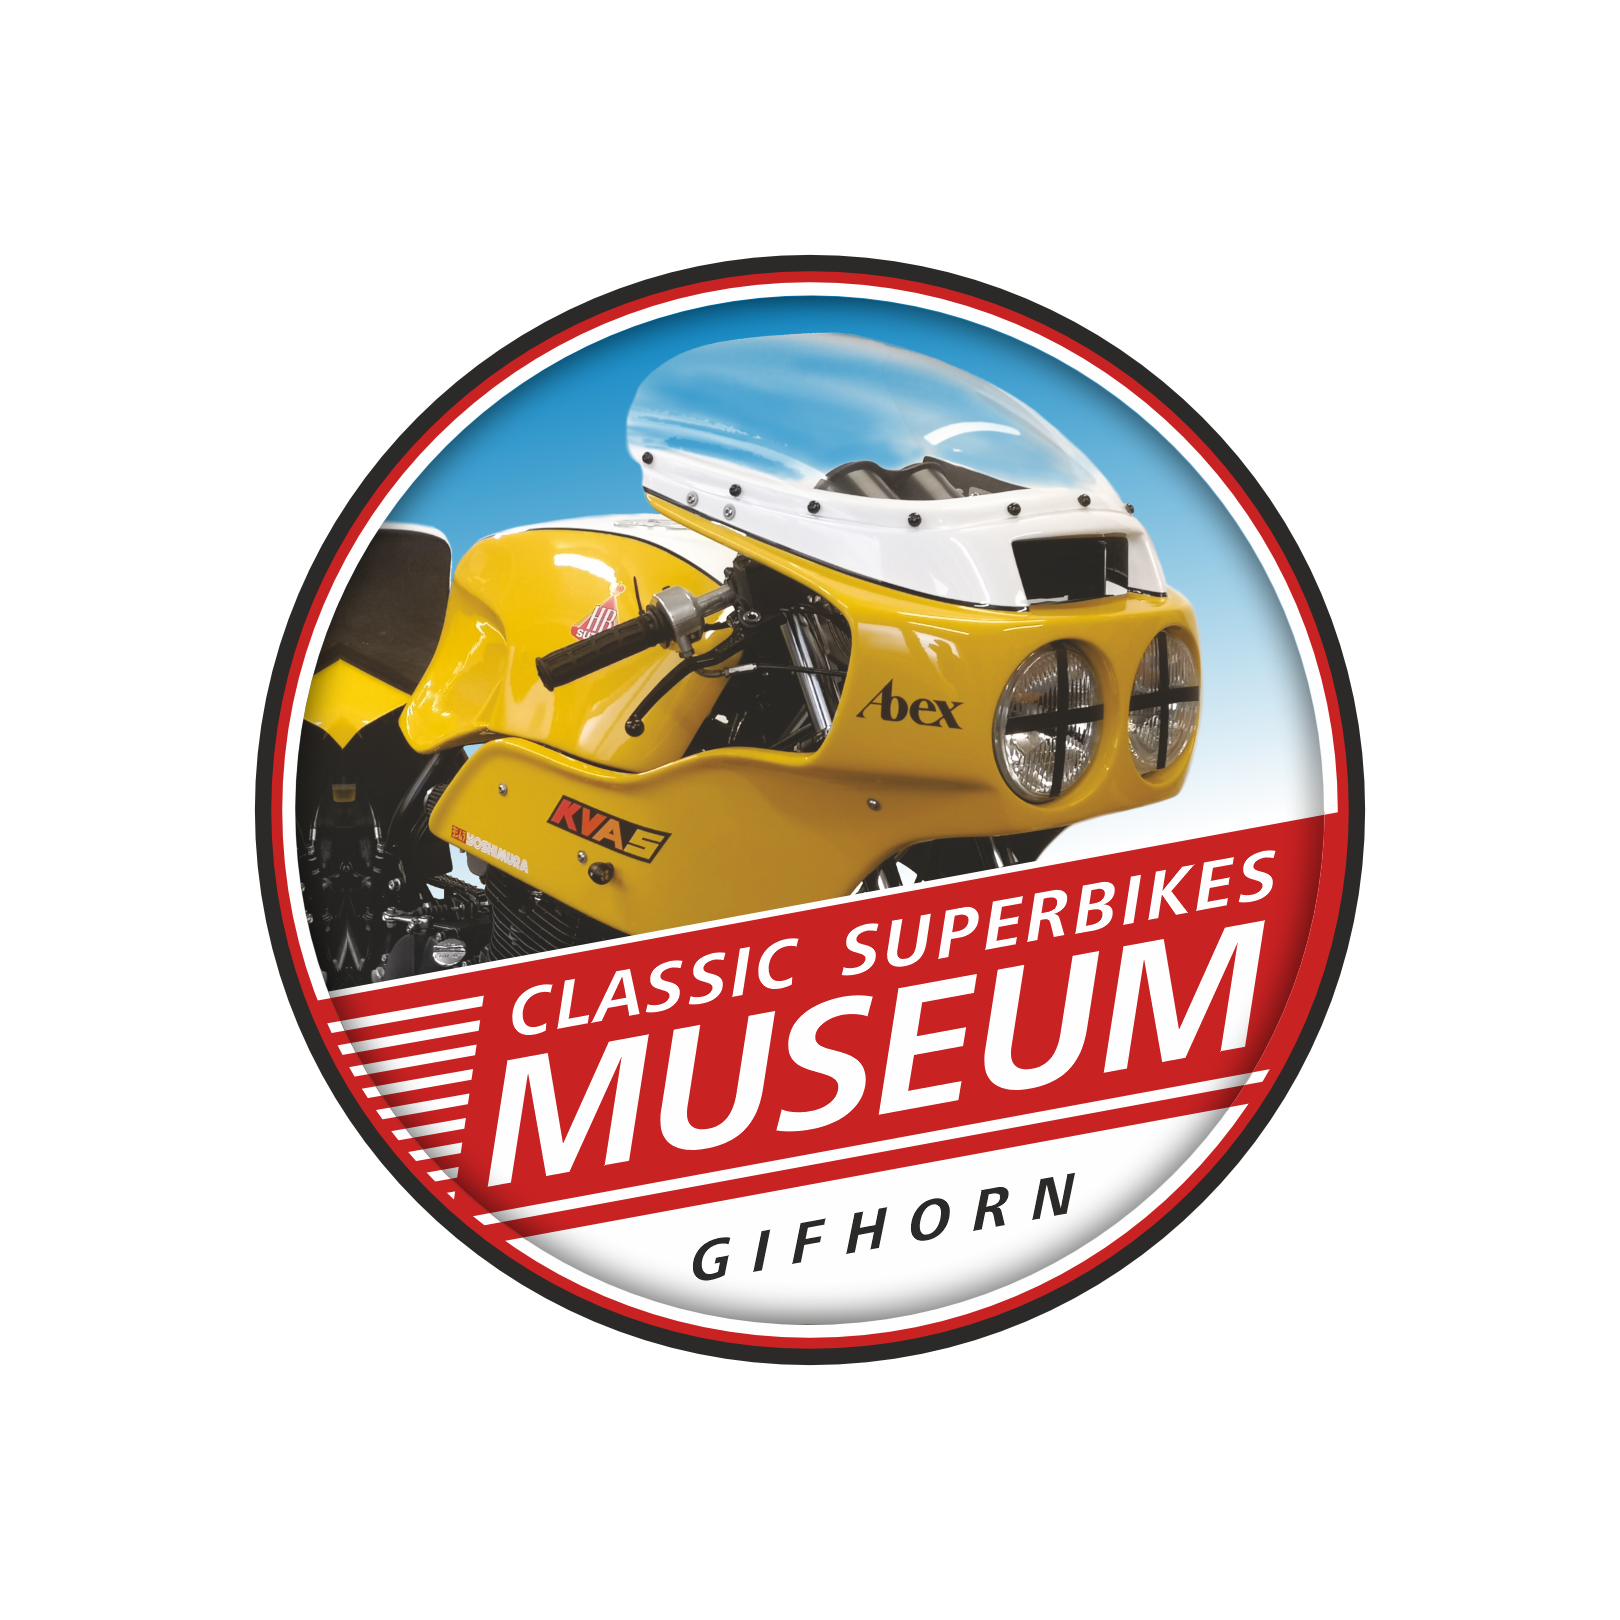 Classic Superbikes Museum